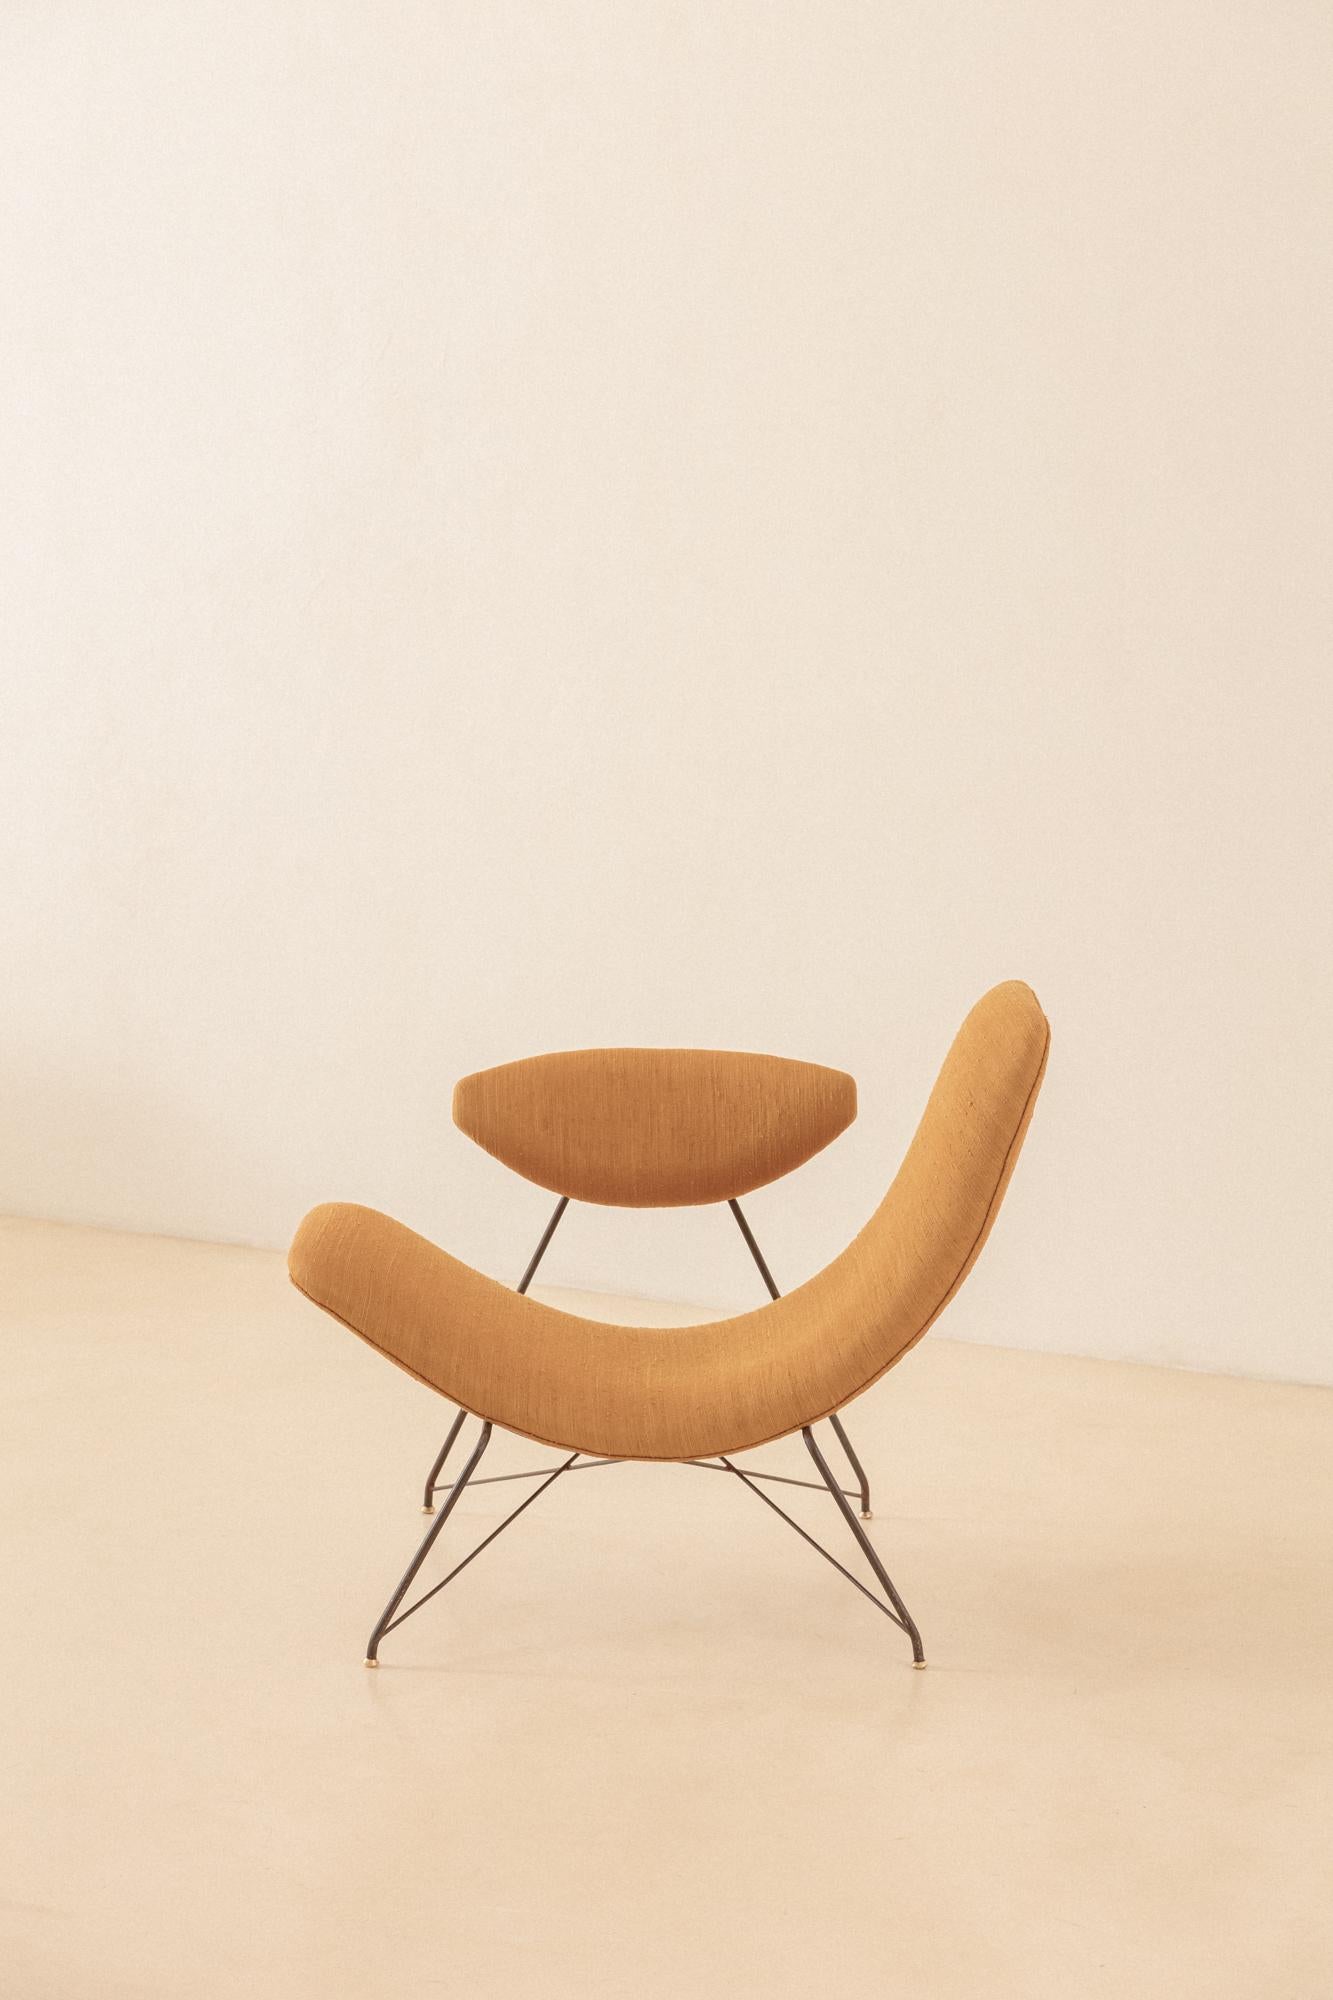 Martin Eisler a conçu ce fauteuil sculptural en 1955. Cette pièce est considérée comme l'un des fauteuils les plus emblématiques du design moderne brésilien. Le caractère unique de ce fauteuil réside dans plusieurs qualités. Tout d'abord, la forme